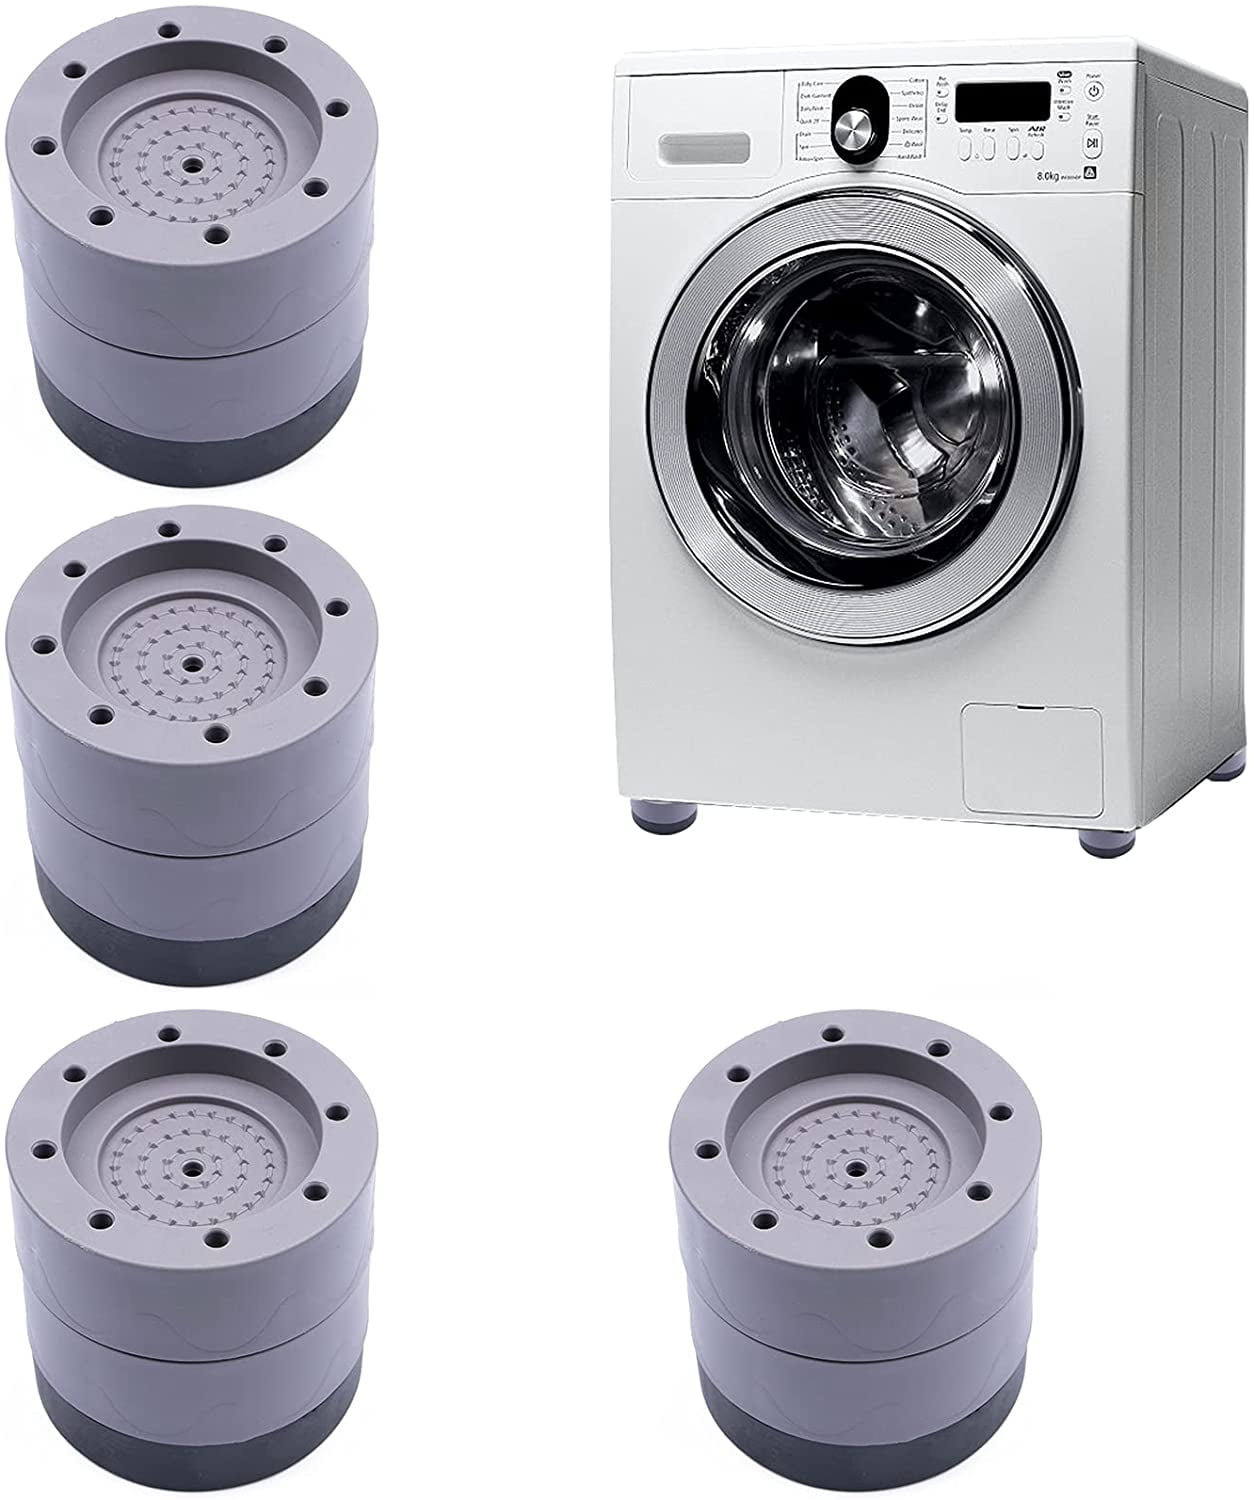 Fridge Washer Leveling Feet Feliciay 4pcs Washer And Dryer Anti-Vibration Pads Shock And Noise Cancelling Washing Machine Support Washing Machine Stabilizer Blue